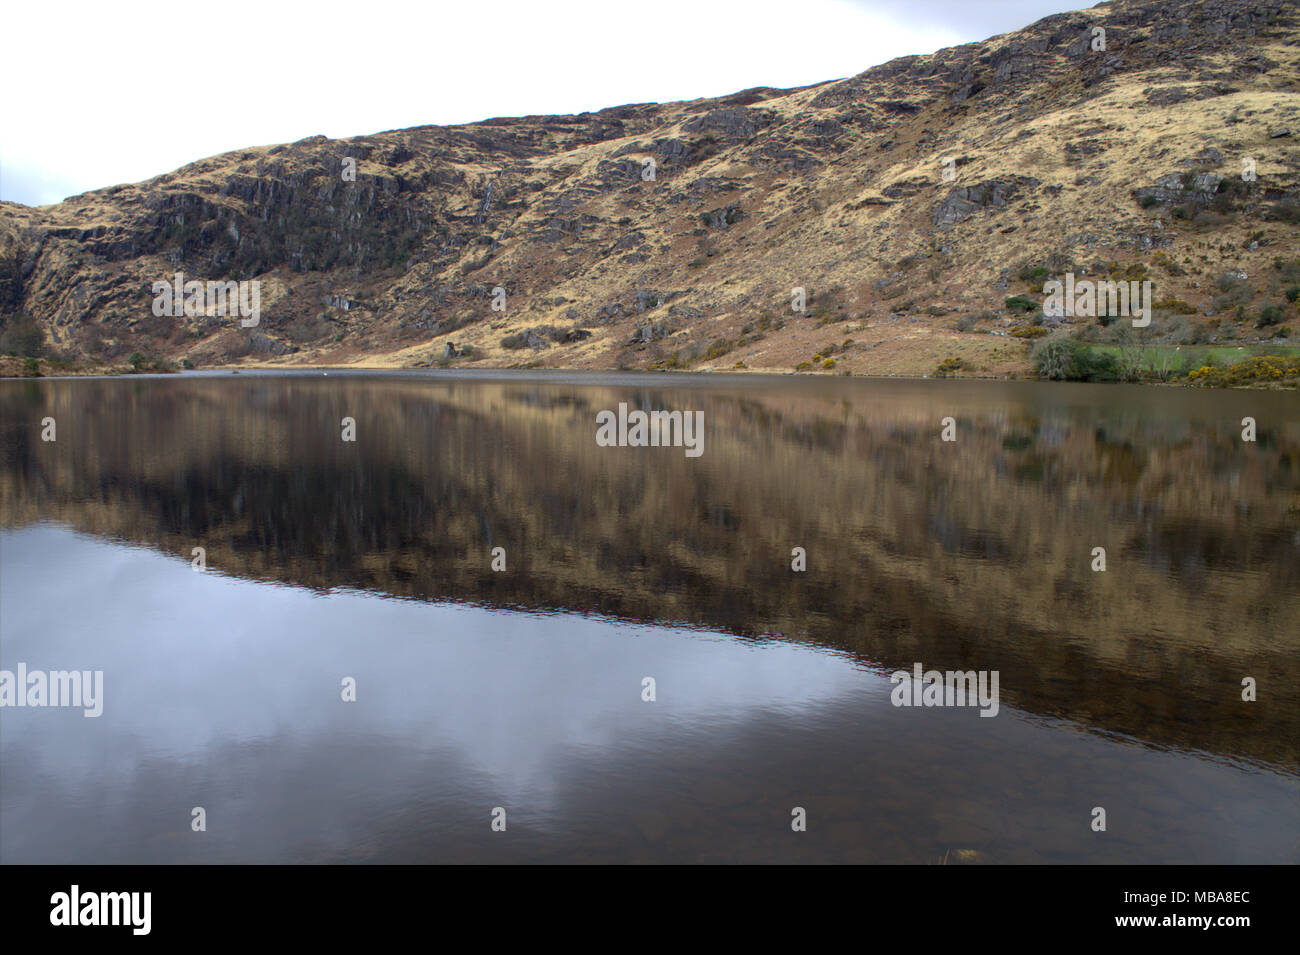 Las colinas que rodean el lago de Gougane Barra, Irlanda se refleja en las todavía oscuras aguas del lago. Un popular destino turístico y de vacaciones. Foto de stock